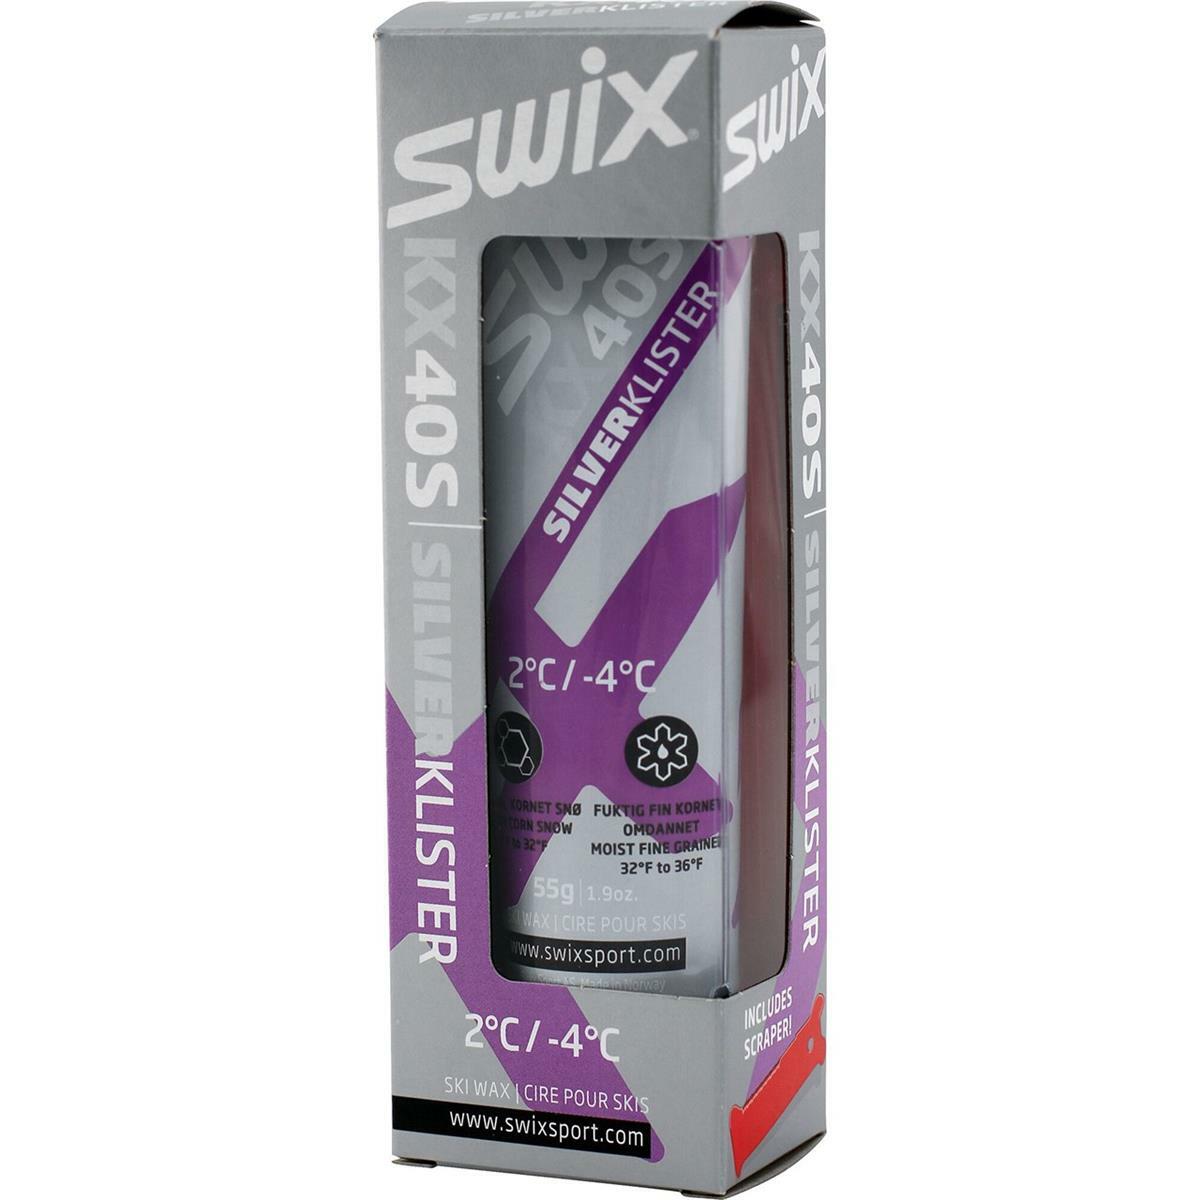 Swix KX40S Silver Klister -4°C/+2°C, 55g